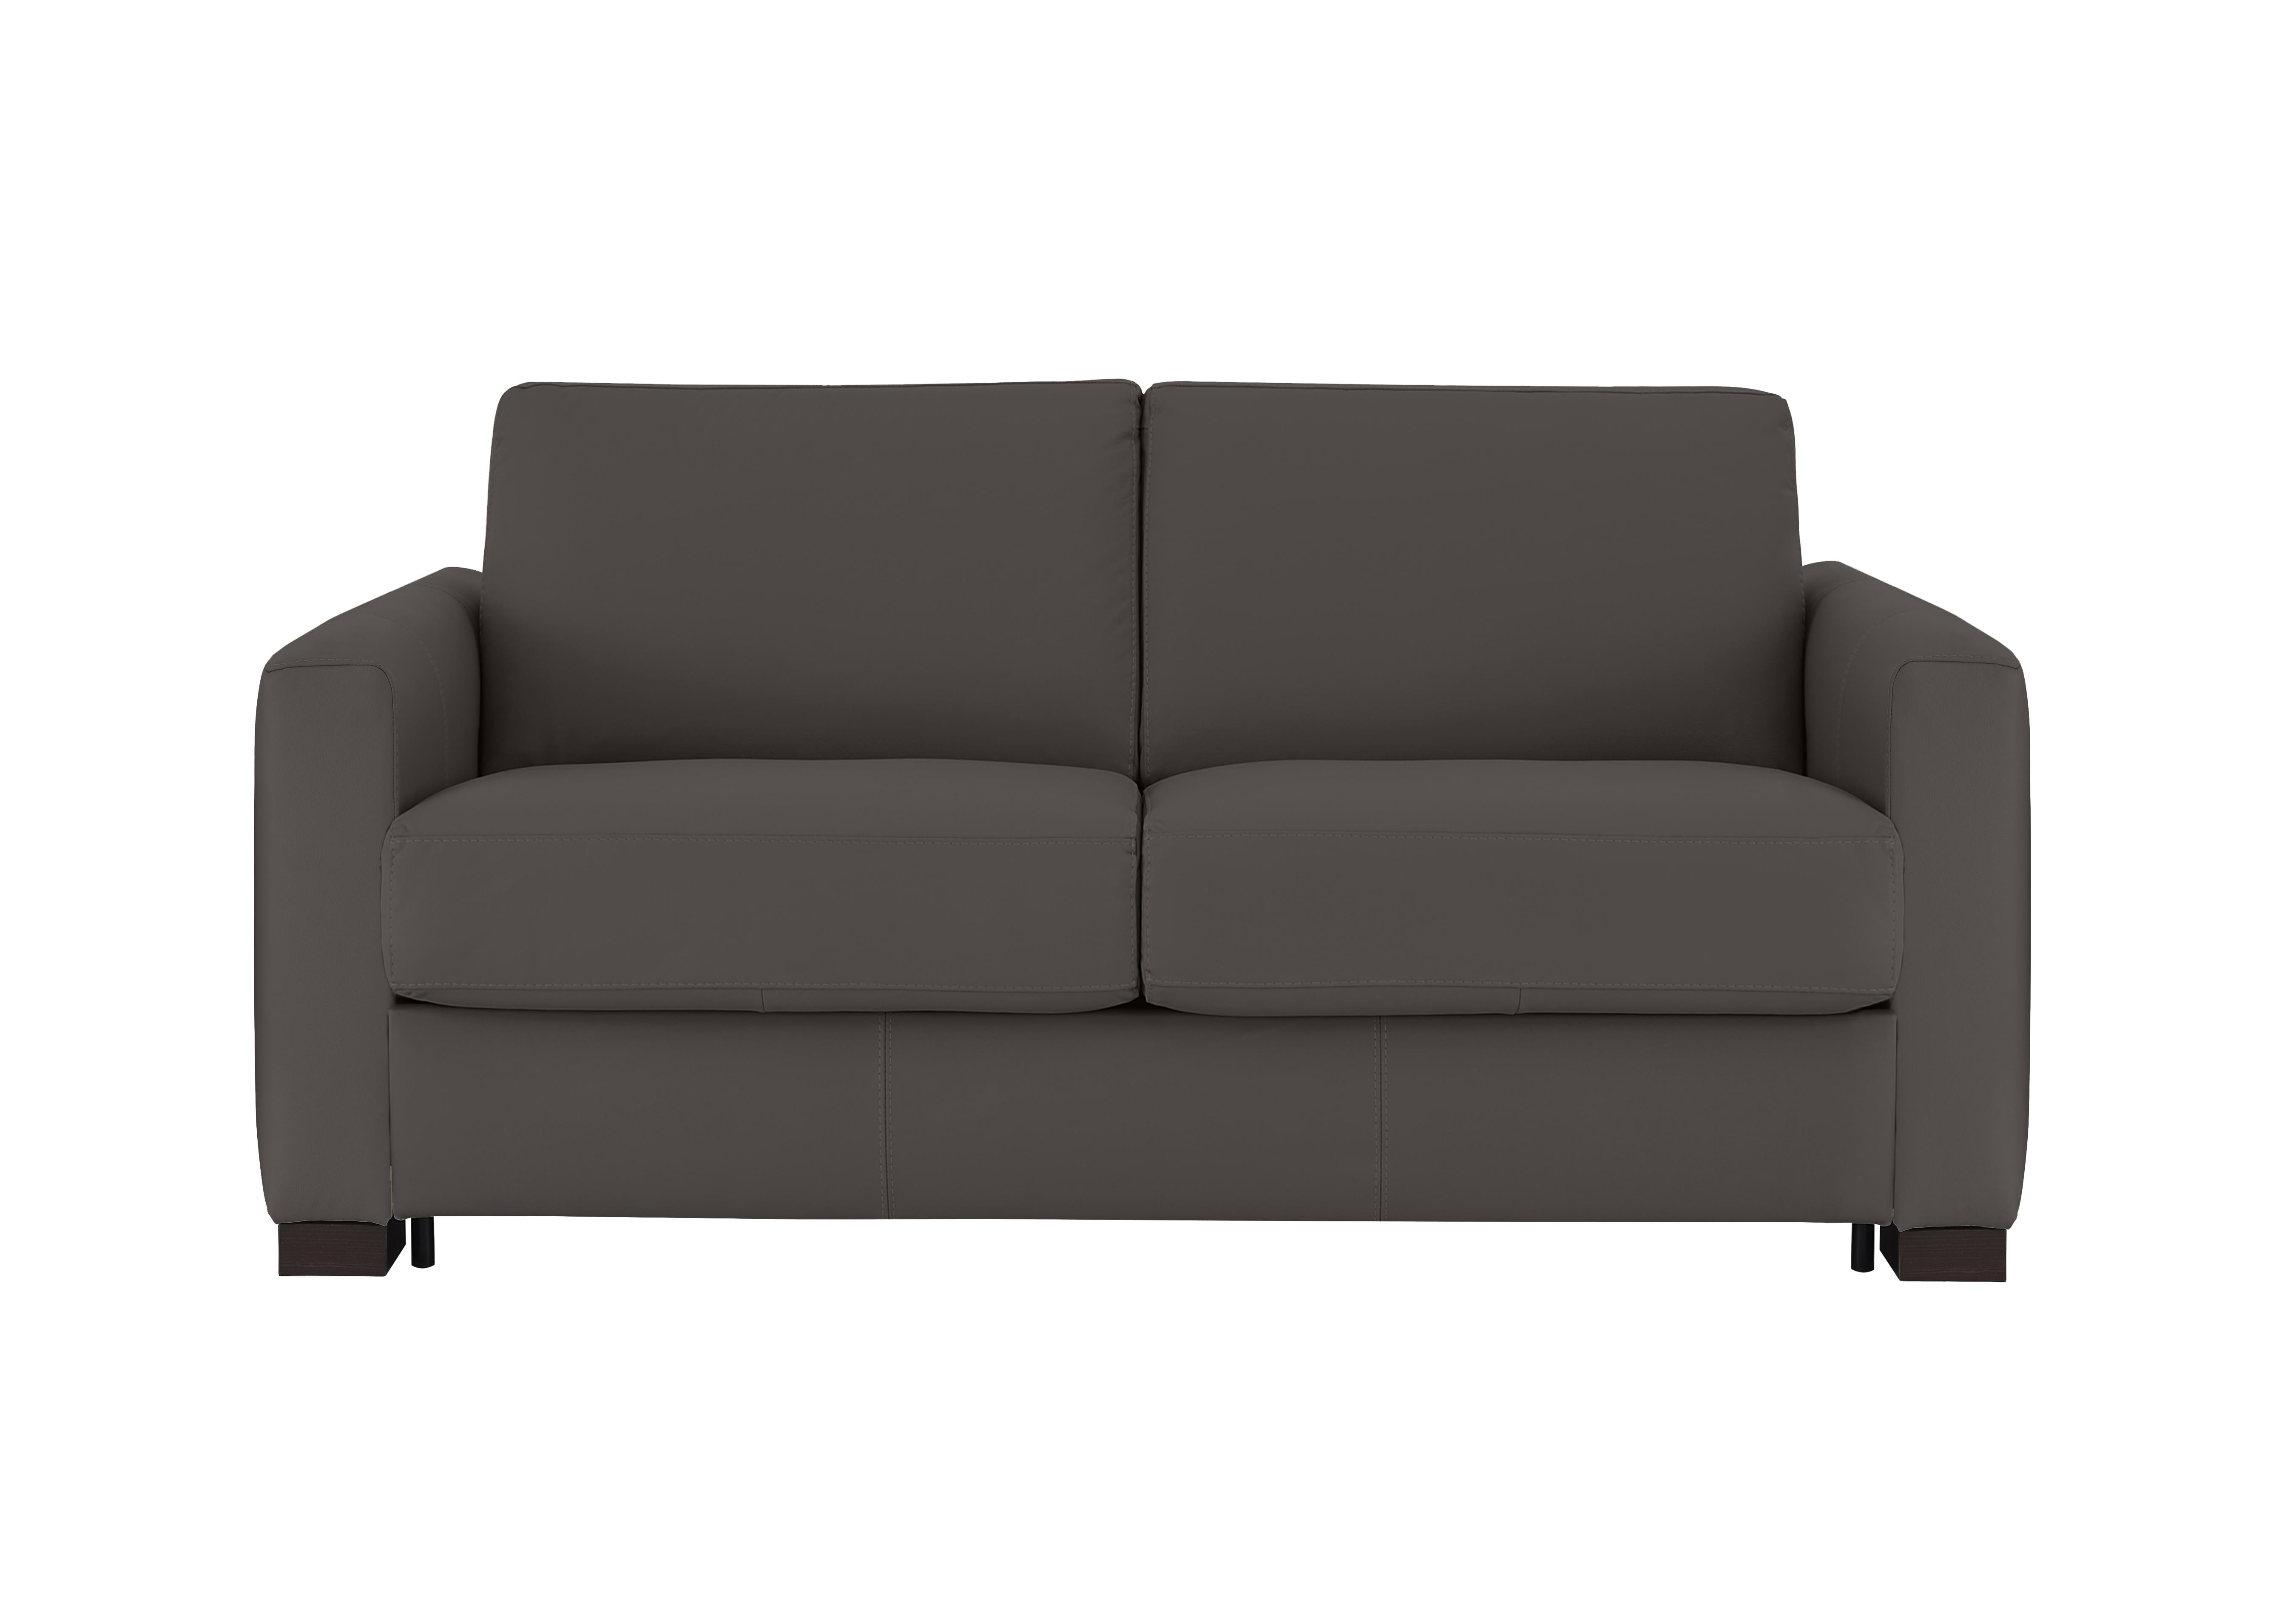 Alcova 2 Seater Leather Sofa Bed with Box Arms in Torello Grigio Scuro 327 on Furniture Village